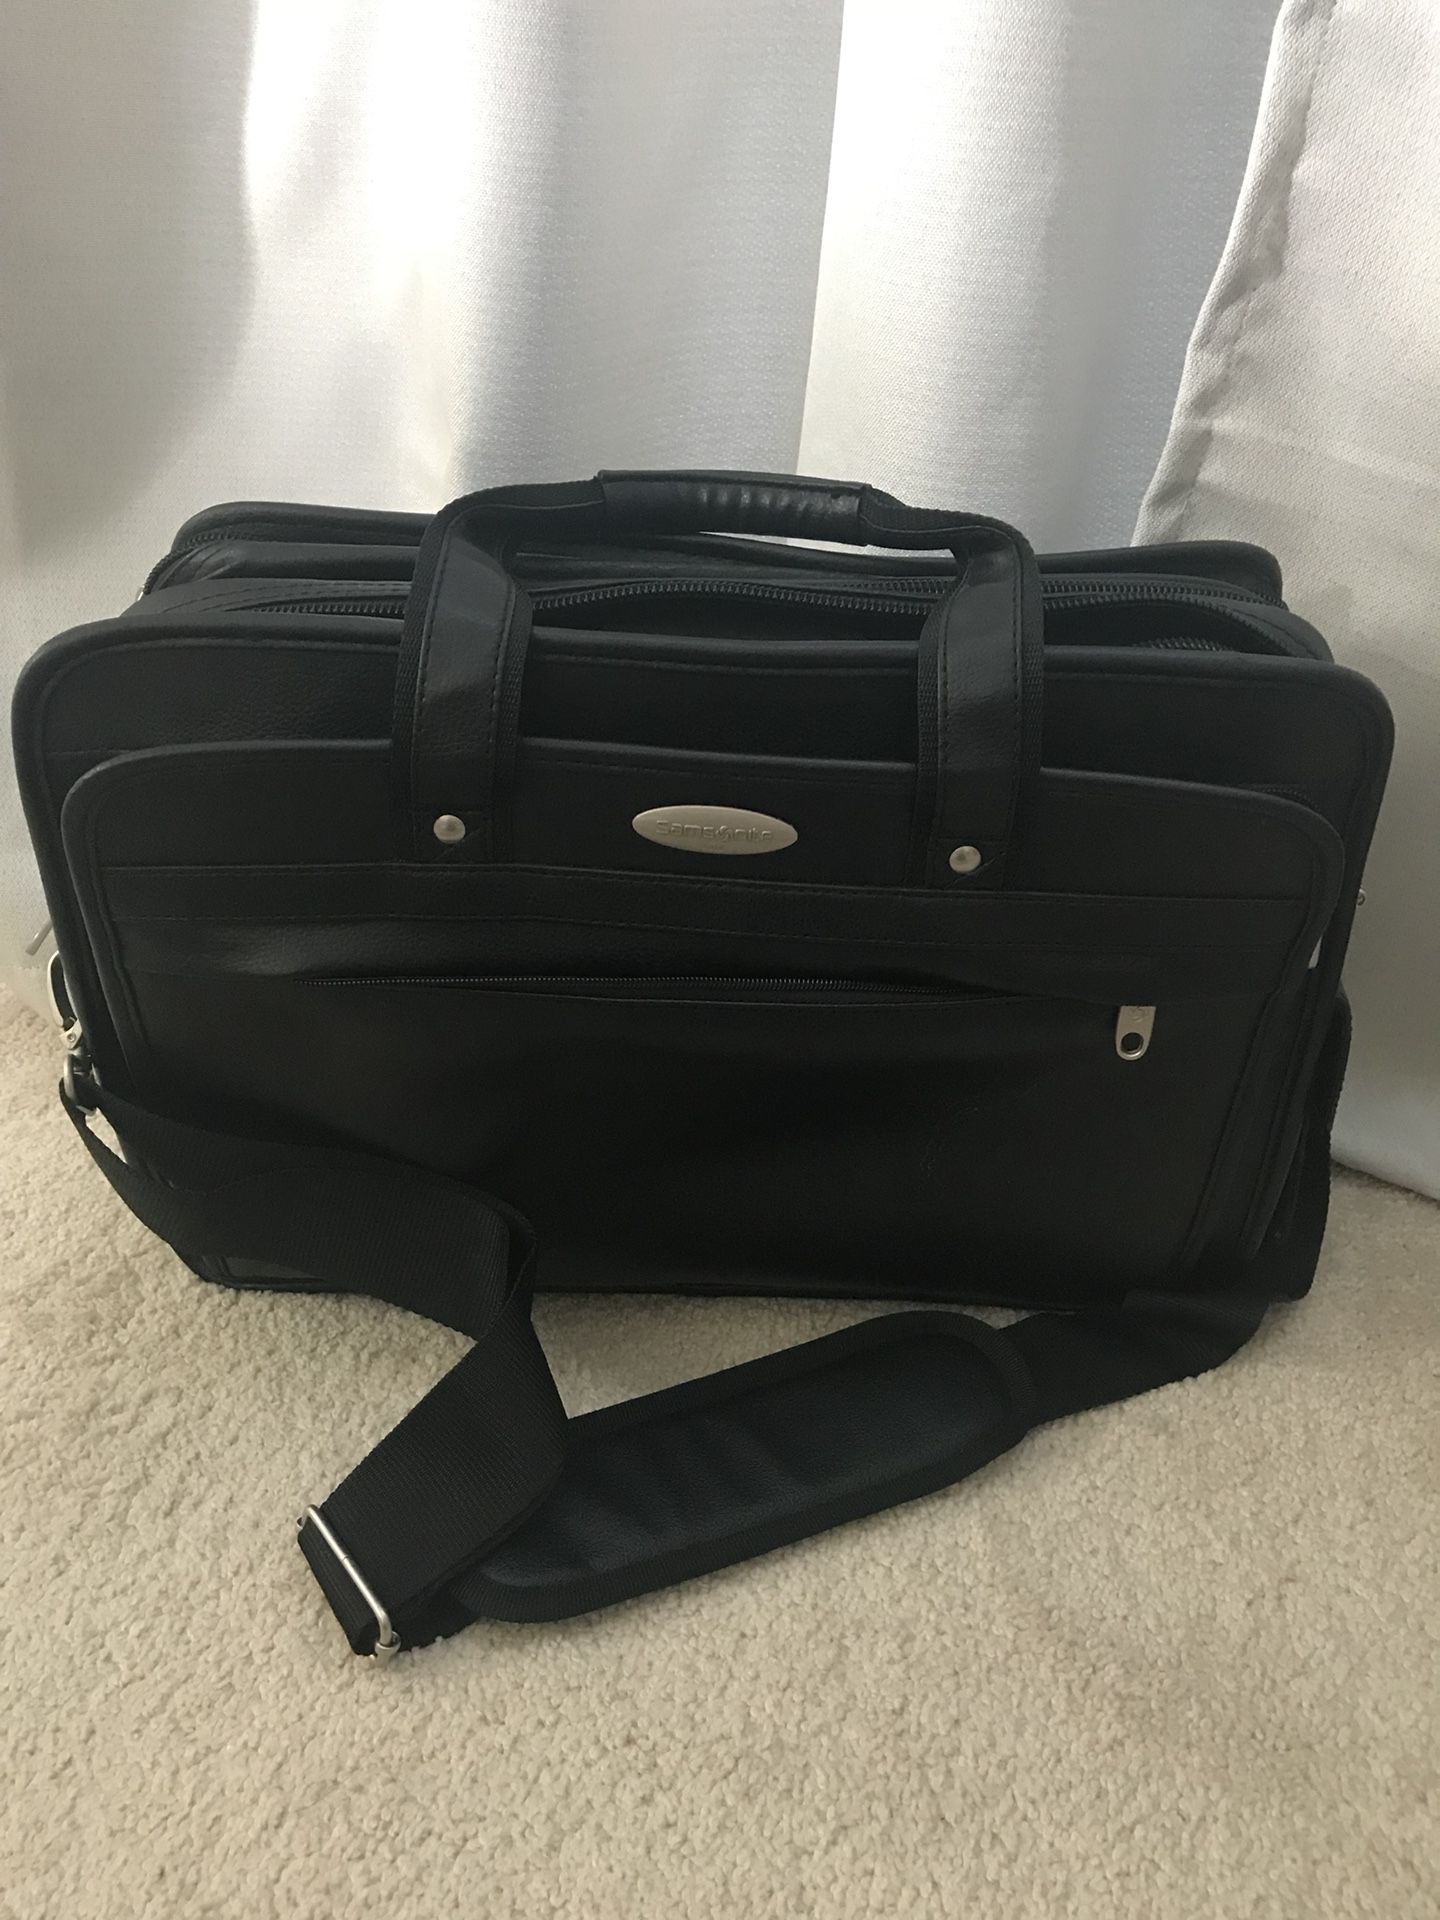 Samsonite businesses carry laptop bag